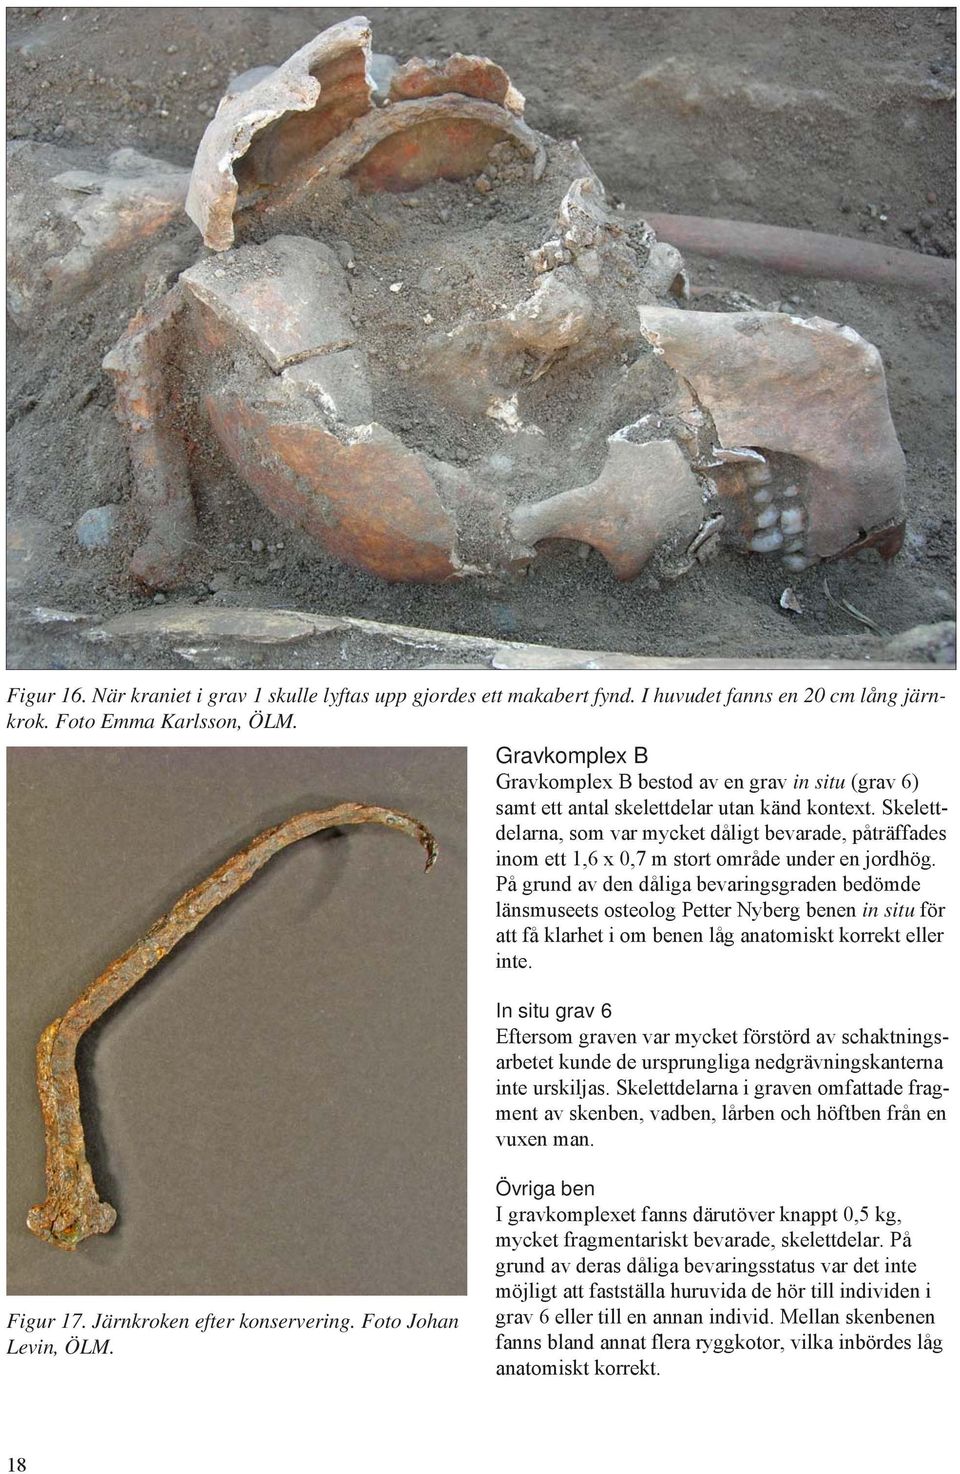 Skelettdelarna, som var mycket dåligt bevarade, påträffades inom ett 1,6 x 0,7 m stort område under en jordhög.